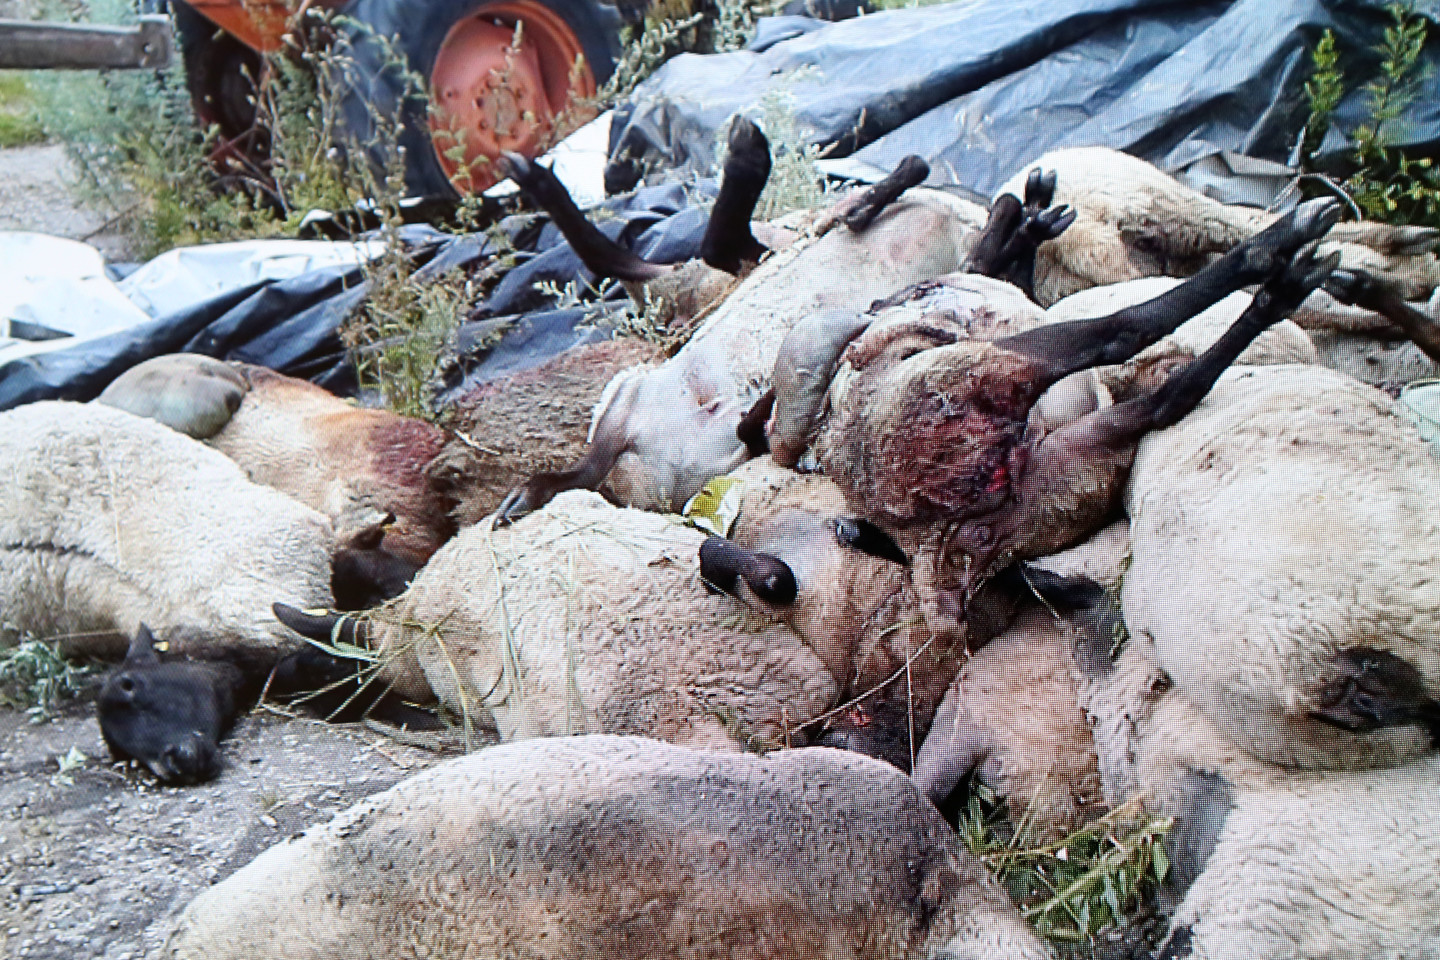 Suvalkijoje vilkai avis pjauna ne tiktai ganyklose, bet ir tvartuose. Ūkininkas J.Kurtinaitis neteko net 31 avies.